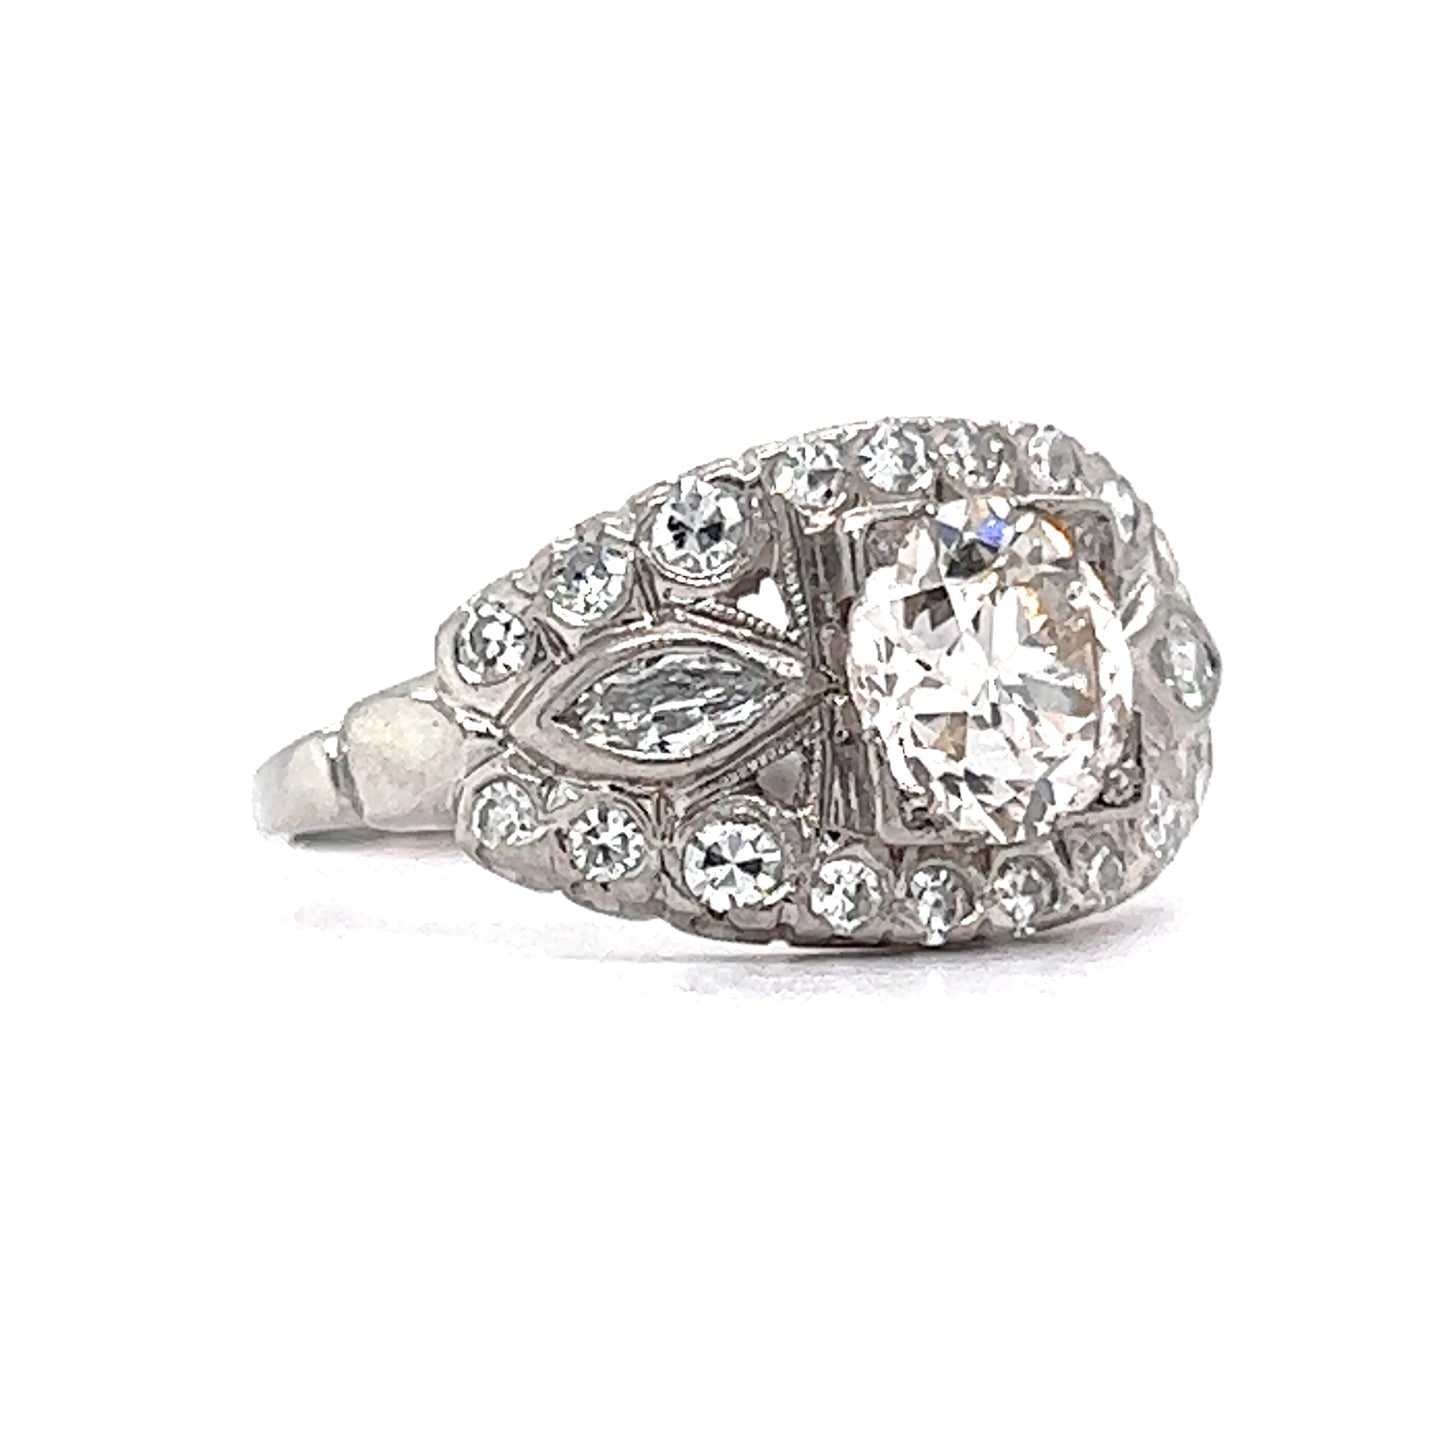 1.13 Deco European Diamond Engagement Ring in Platinum